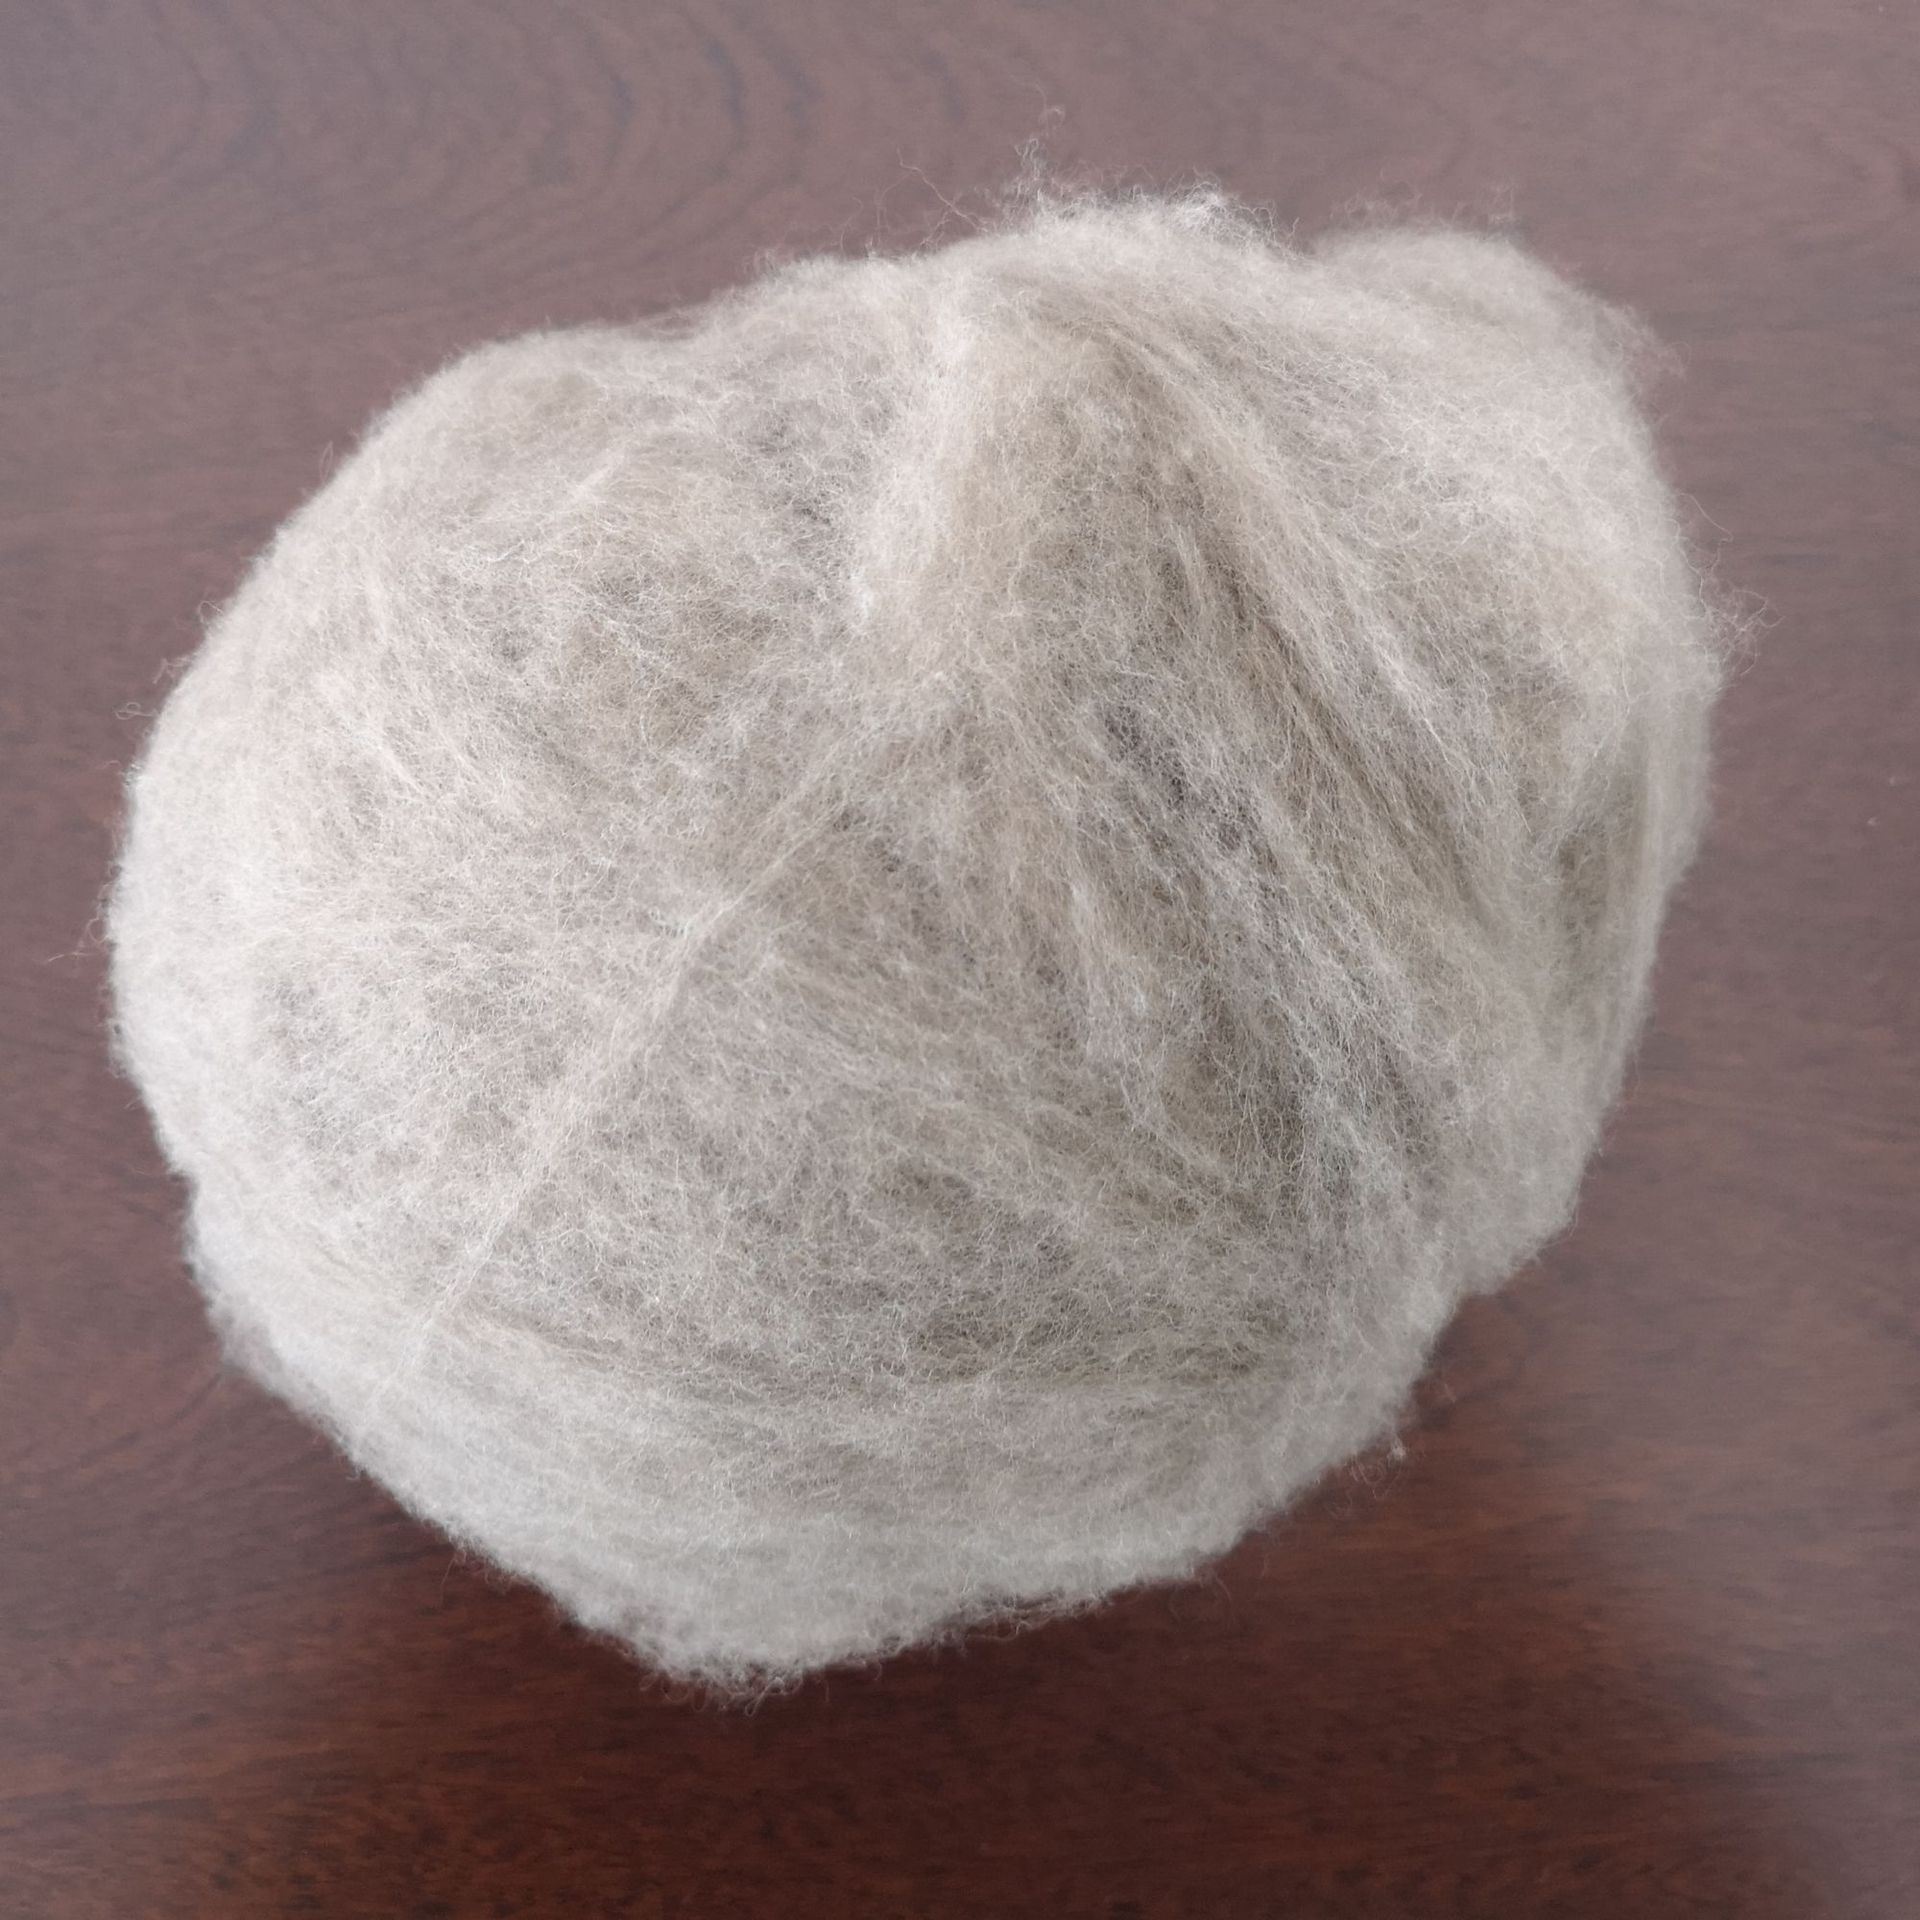 粗纺用优质貉子绒 出口品质貉子绒 貉子原绒出售 貉子绒厂家直销